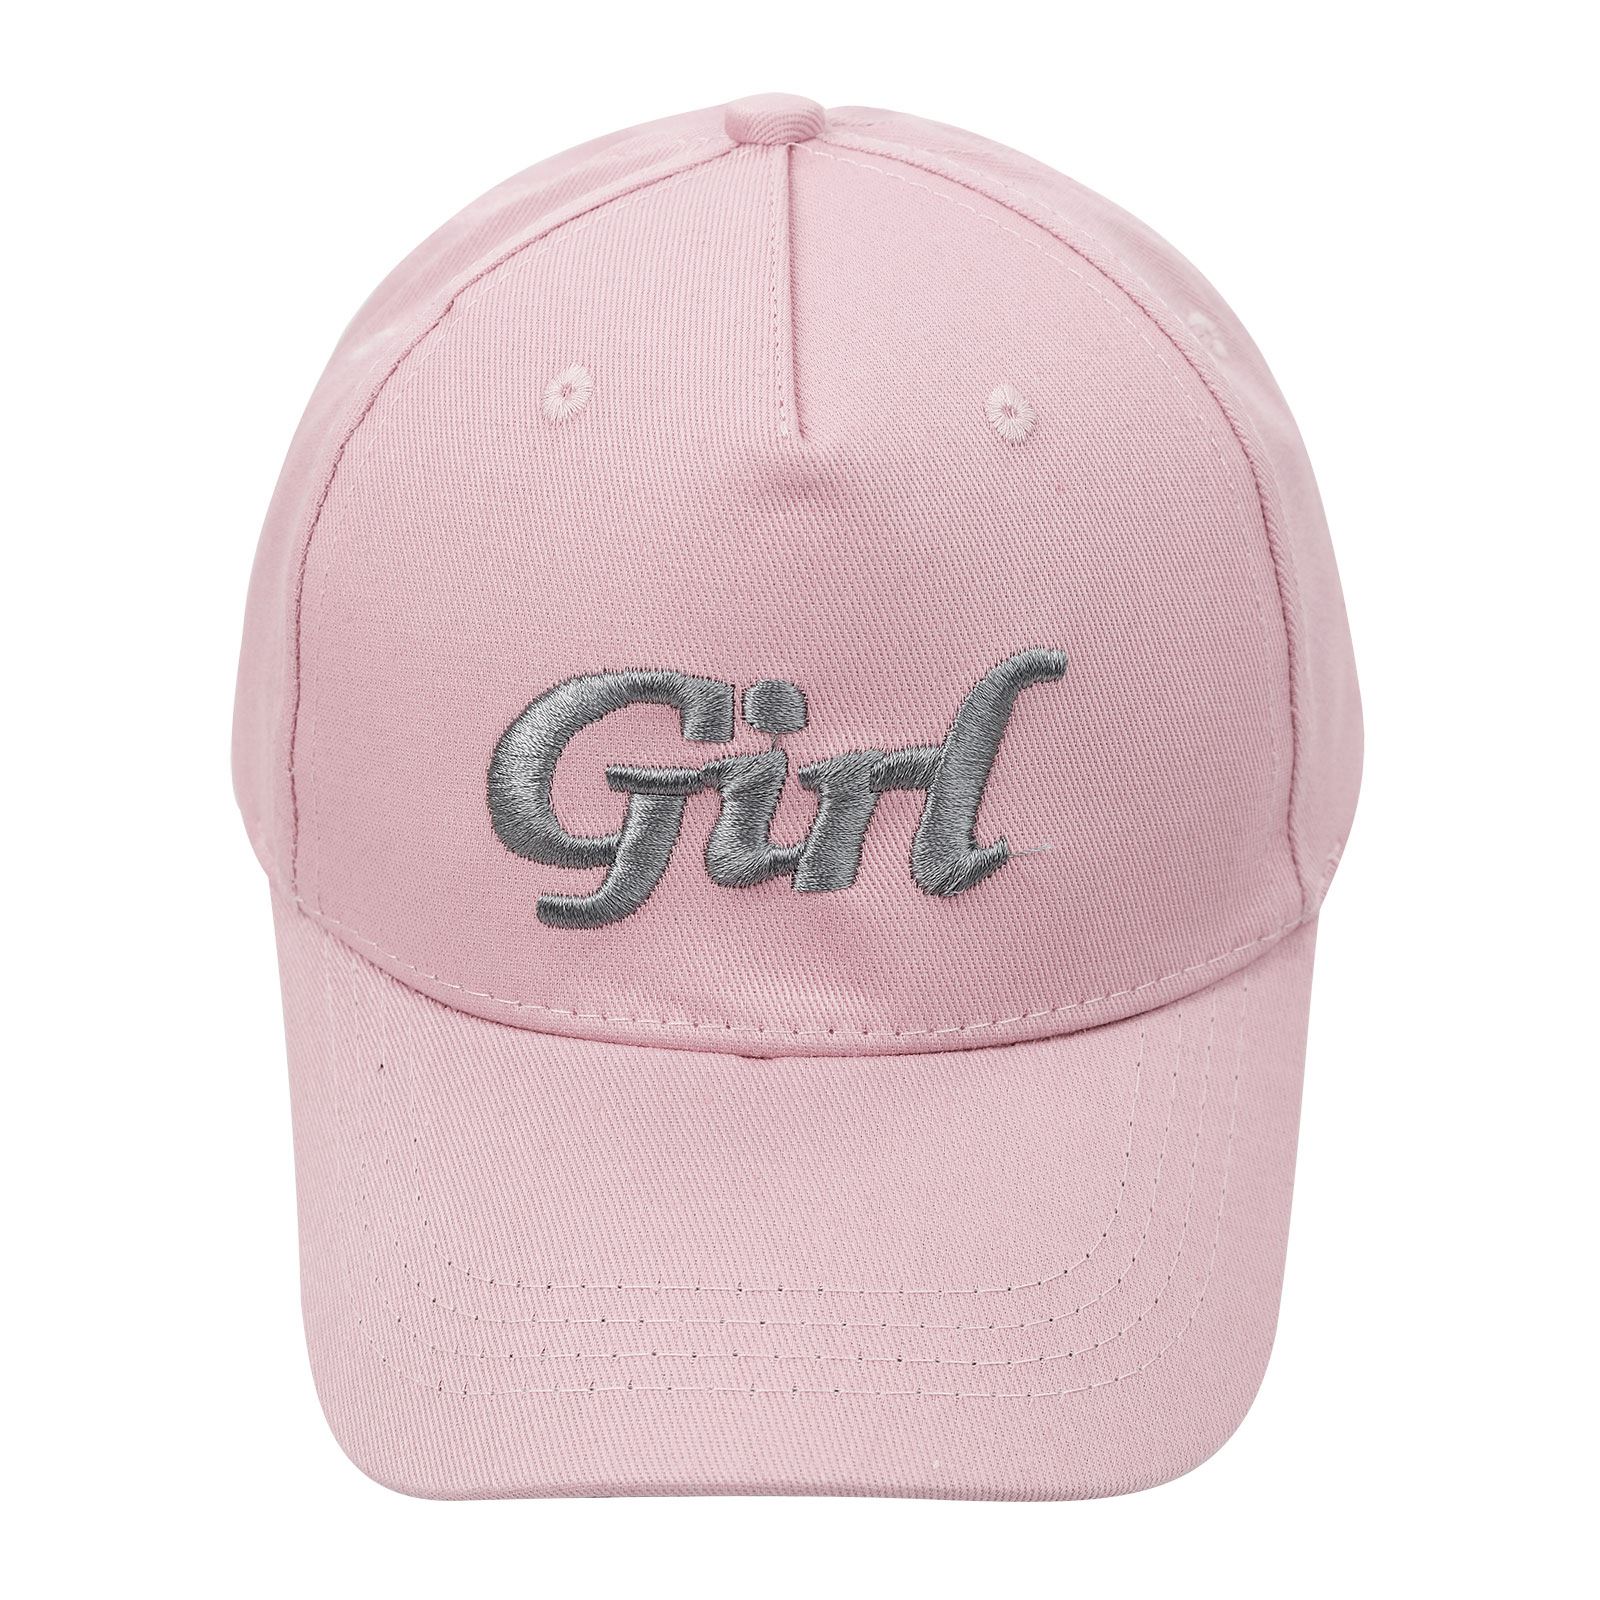 Civil Girls Kız Çocuk Kep Şapka 10-13 Yaş Pembe